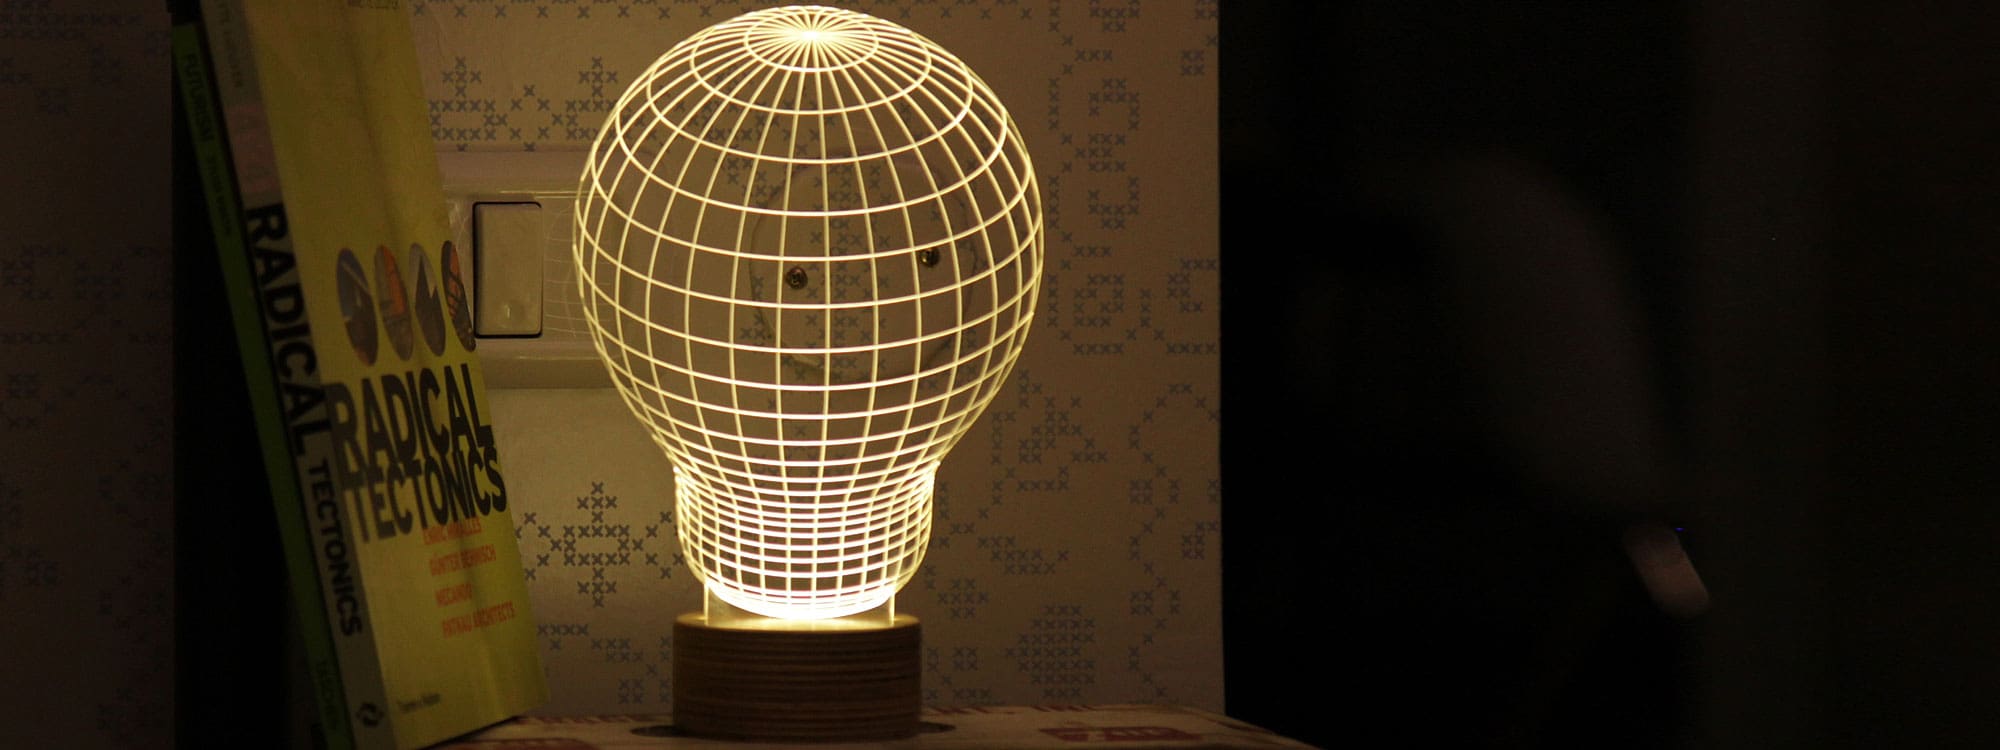 Image of illuminated Bulb optical illusion LED light by Studio Cheha against dark background